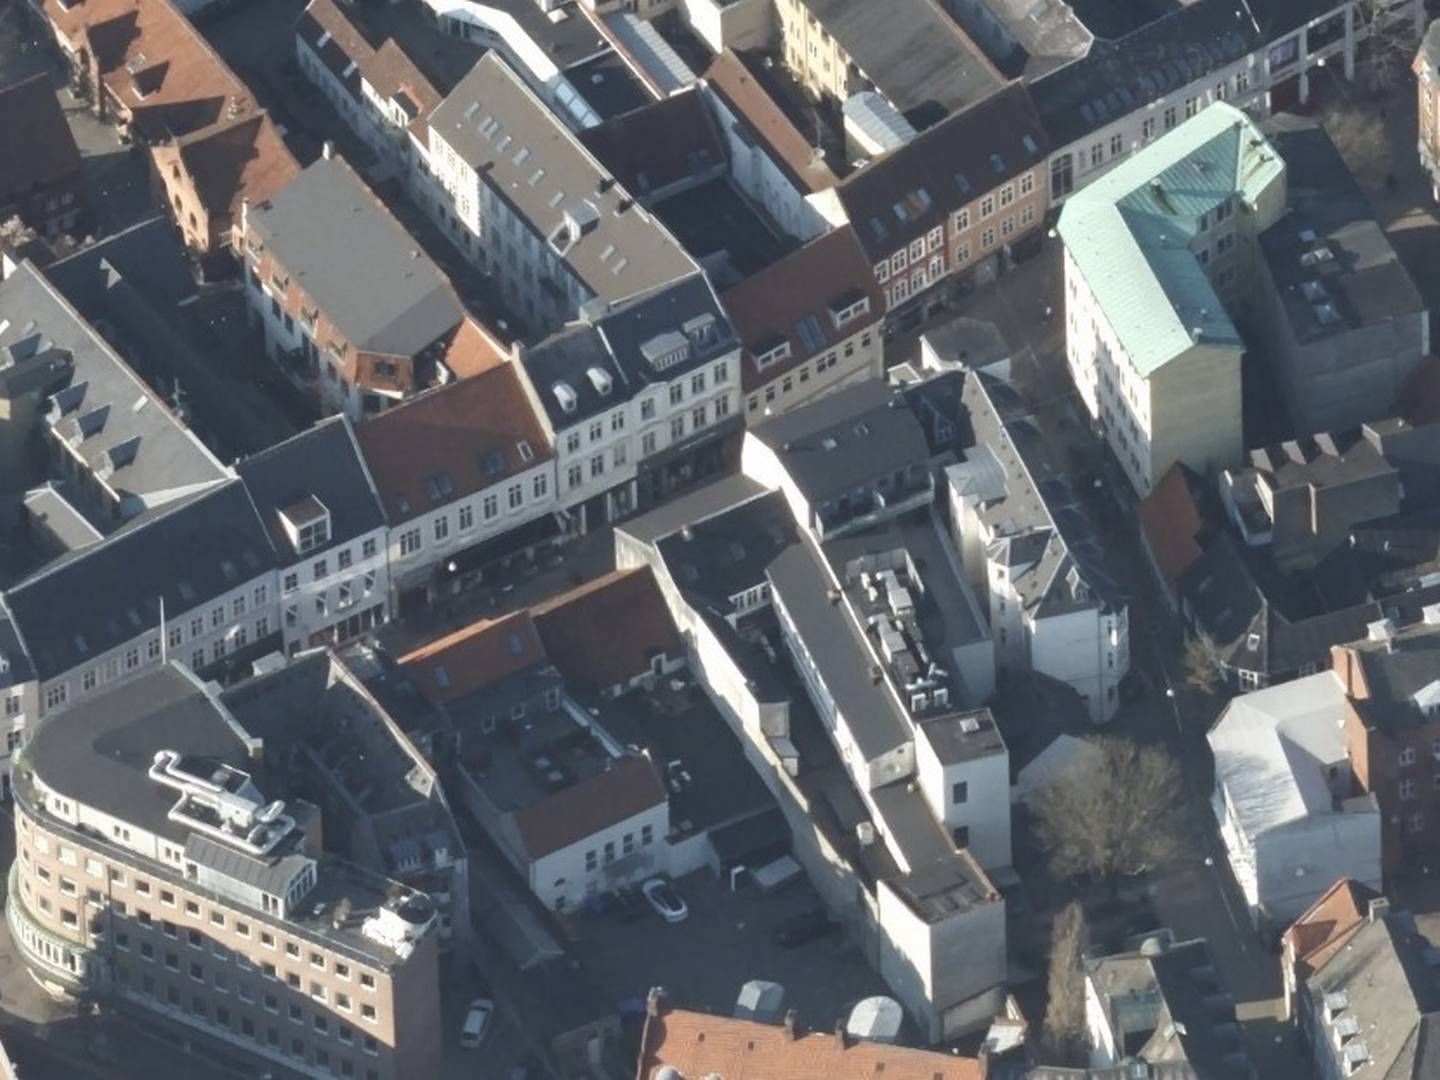 Ejendommen Vestergade 49 i Odense ses midt i billedet øverst, hvor den dengang gule bygning med passage til bygningen bagved nu er istandsat. | Foto: Styrelsen for Dataforsyning og Infrastruktur